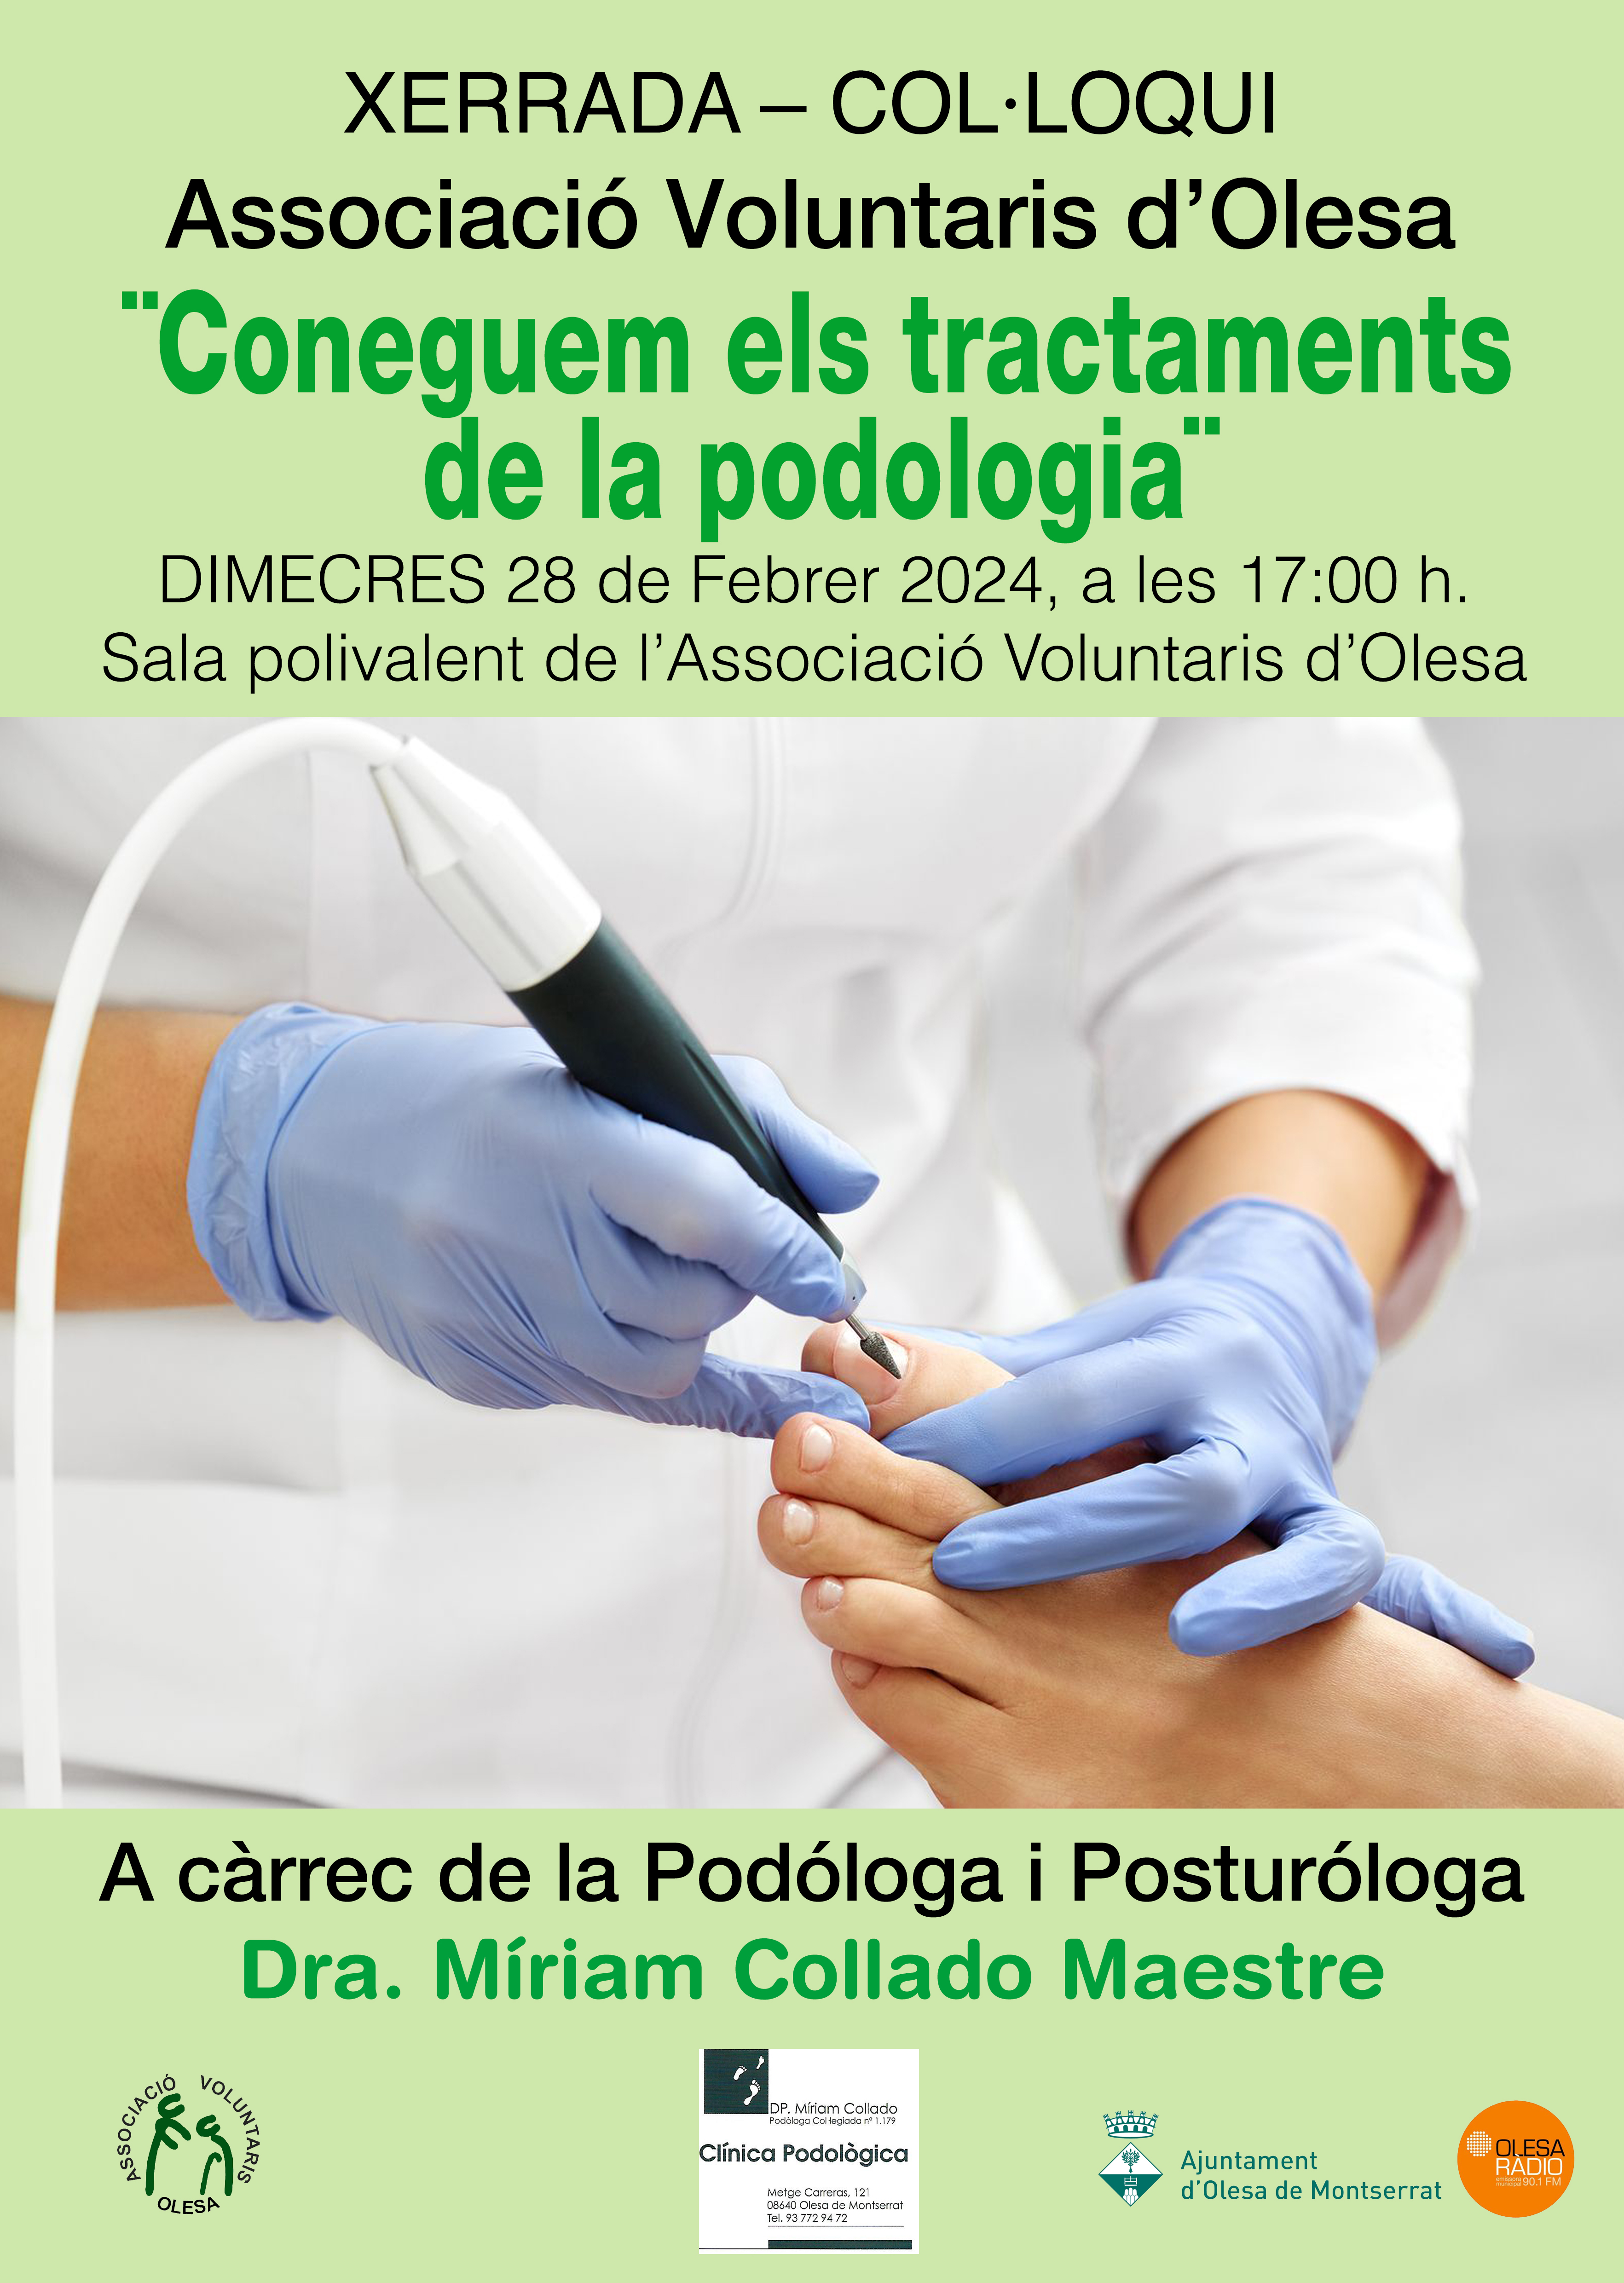 Cartell de la xerrada sobre tractaments de la podologia a l'AVO 2024